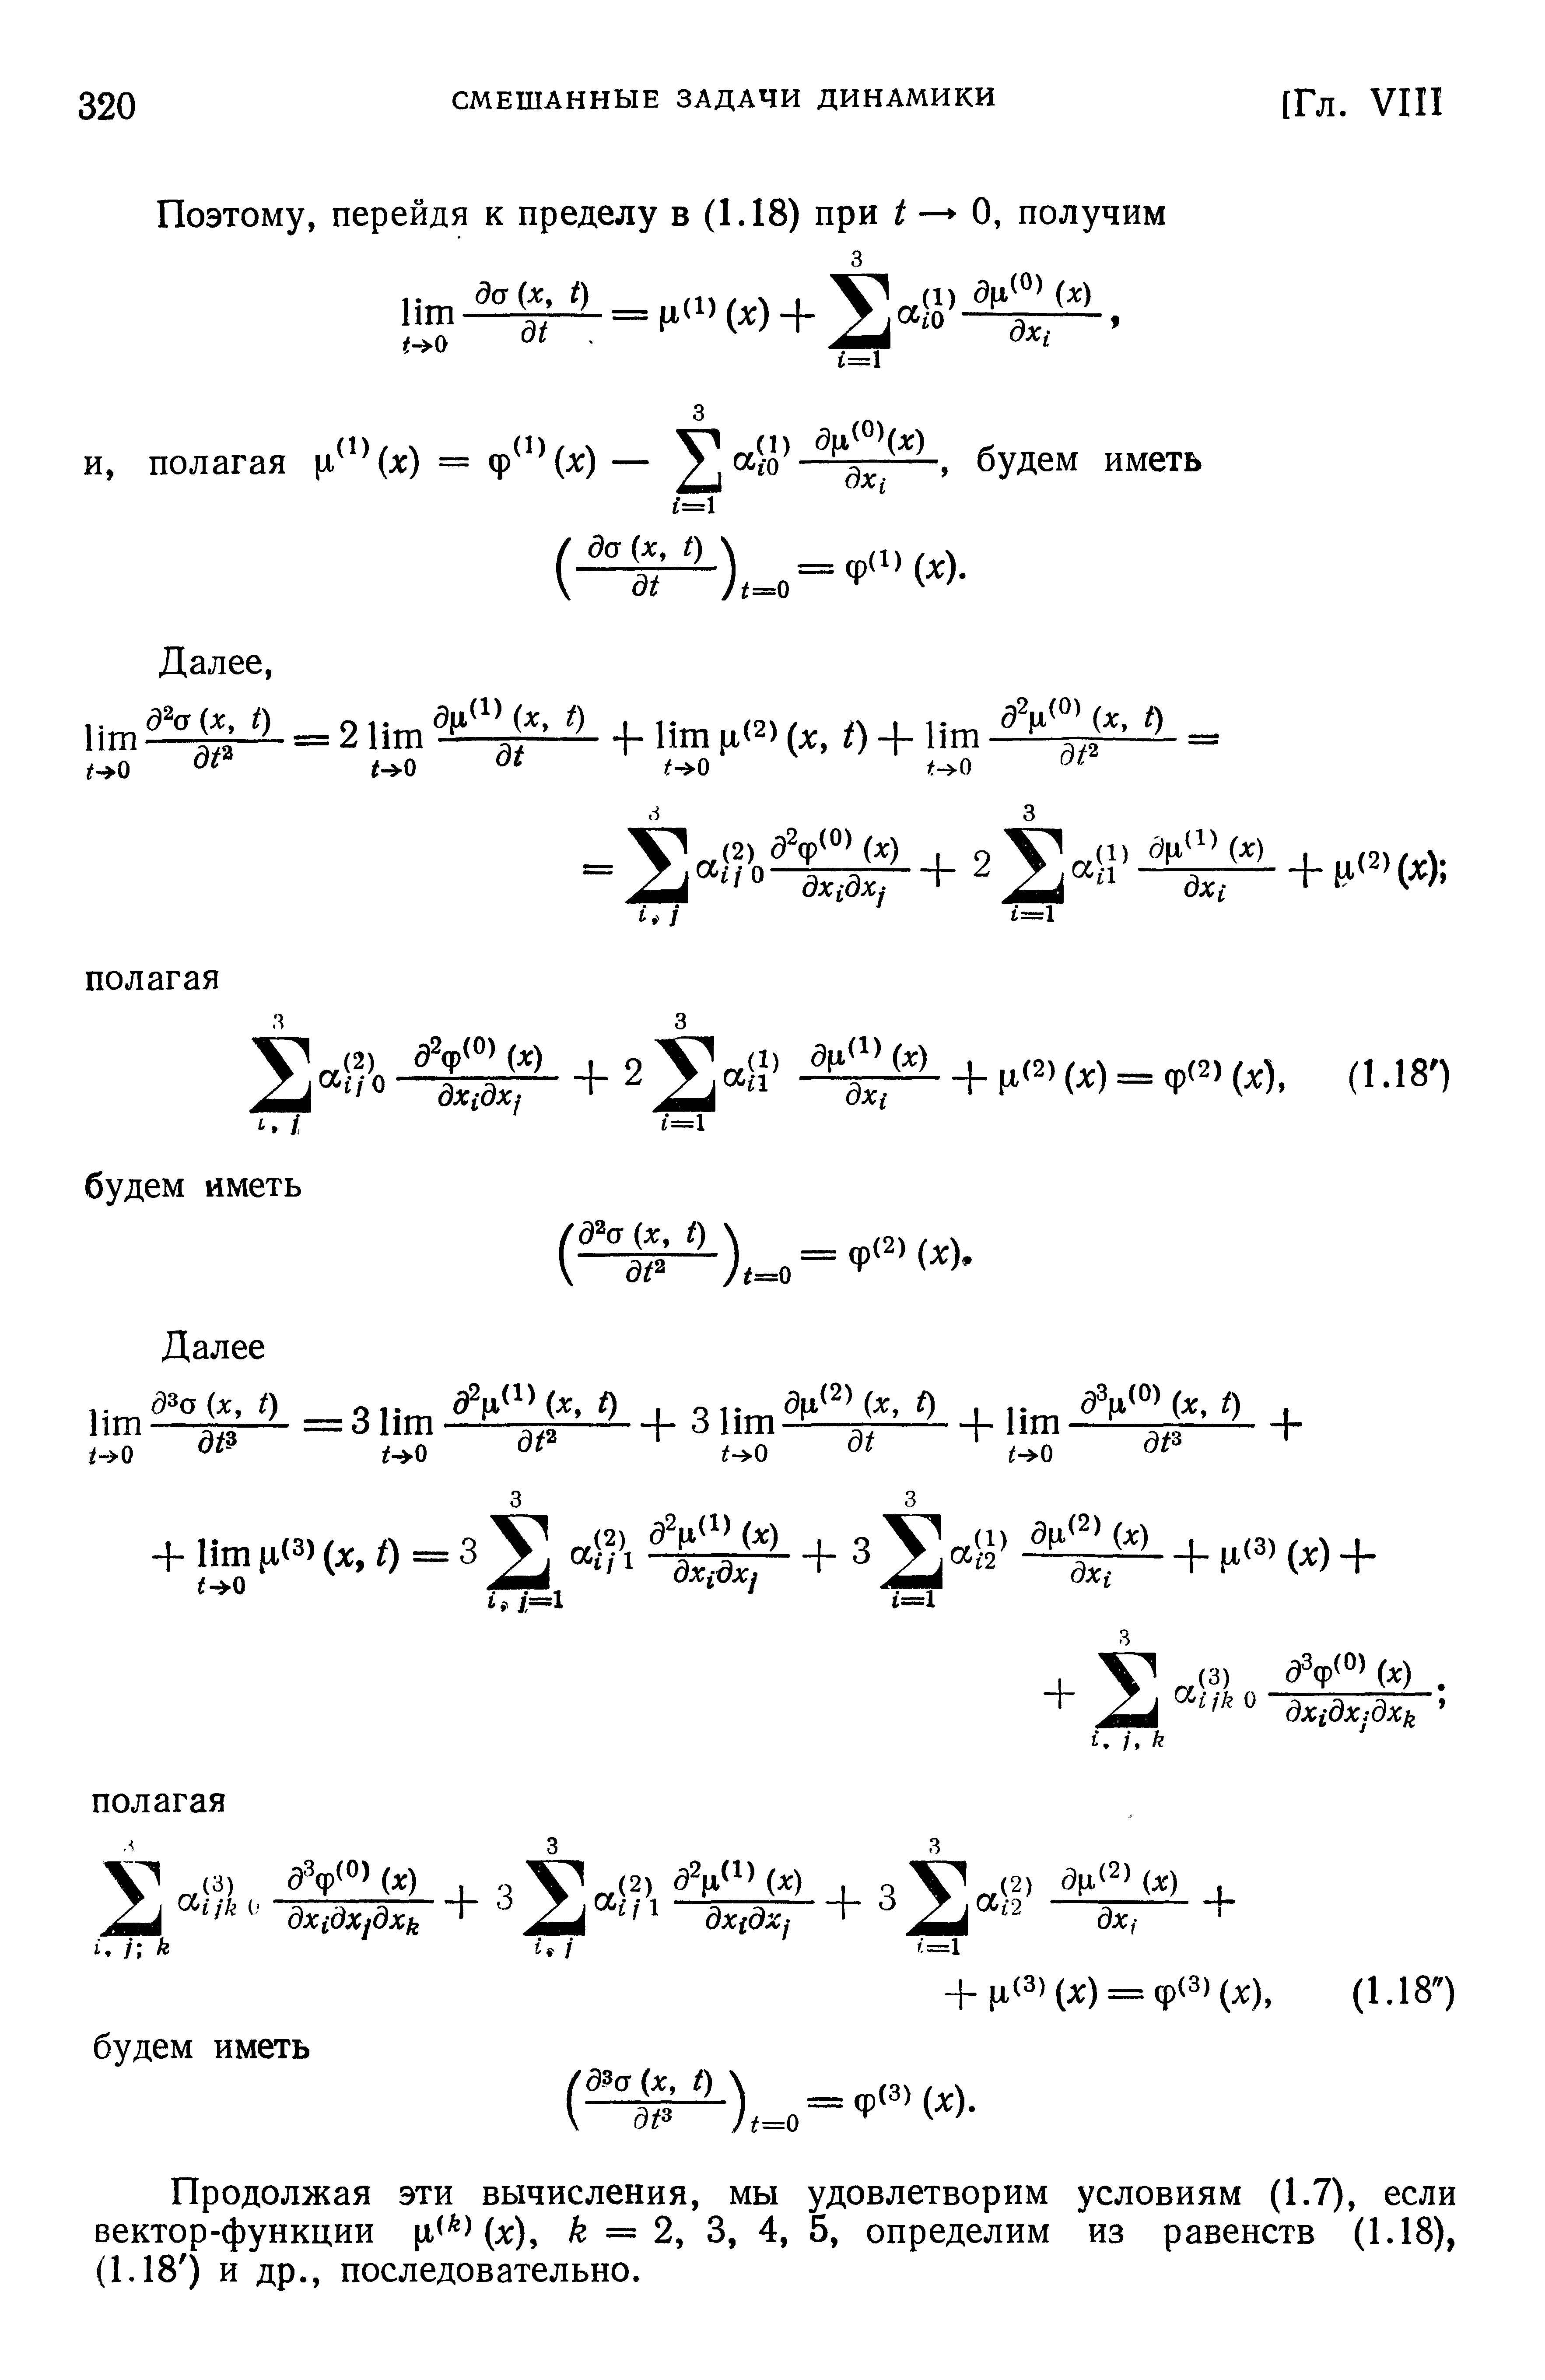 Продолжая эти вычисления, мы удовлетворим условиям (1.7), если вектор-функции ц Цл ), k = 2, 3, 4, 5, определим из равенств (1.18), (1.18 ) и др., последовательно.
